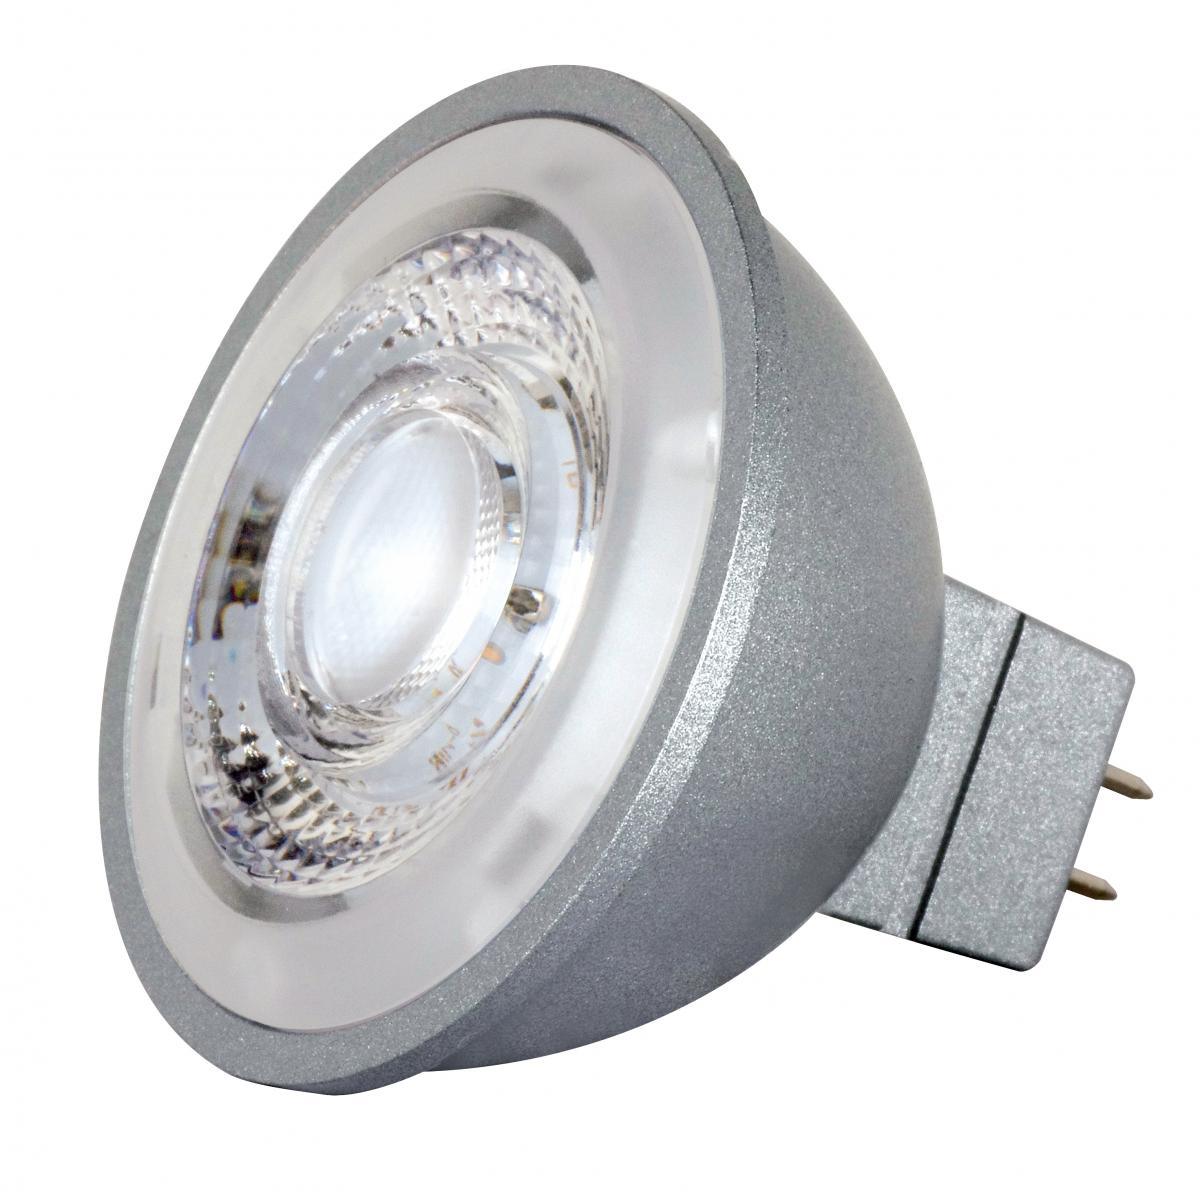 MR16 Reflector LED bulb, 8 watt, 490 Lumens, 2700K, GU5.3 Base, 40 Deg. Flood - Bees Lighting